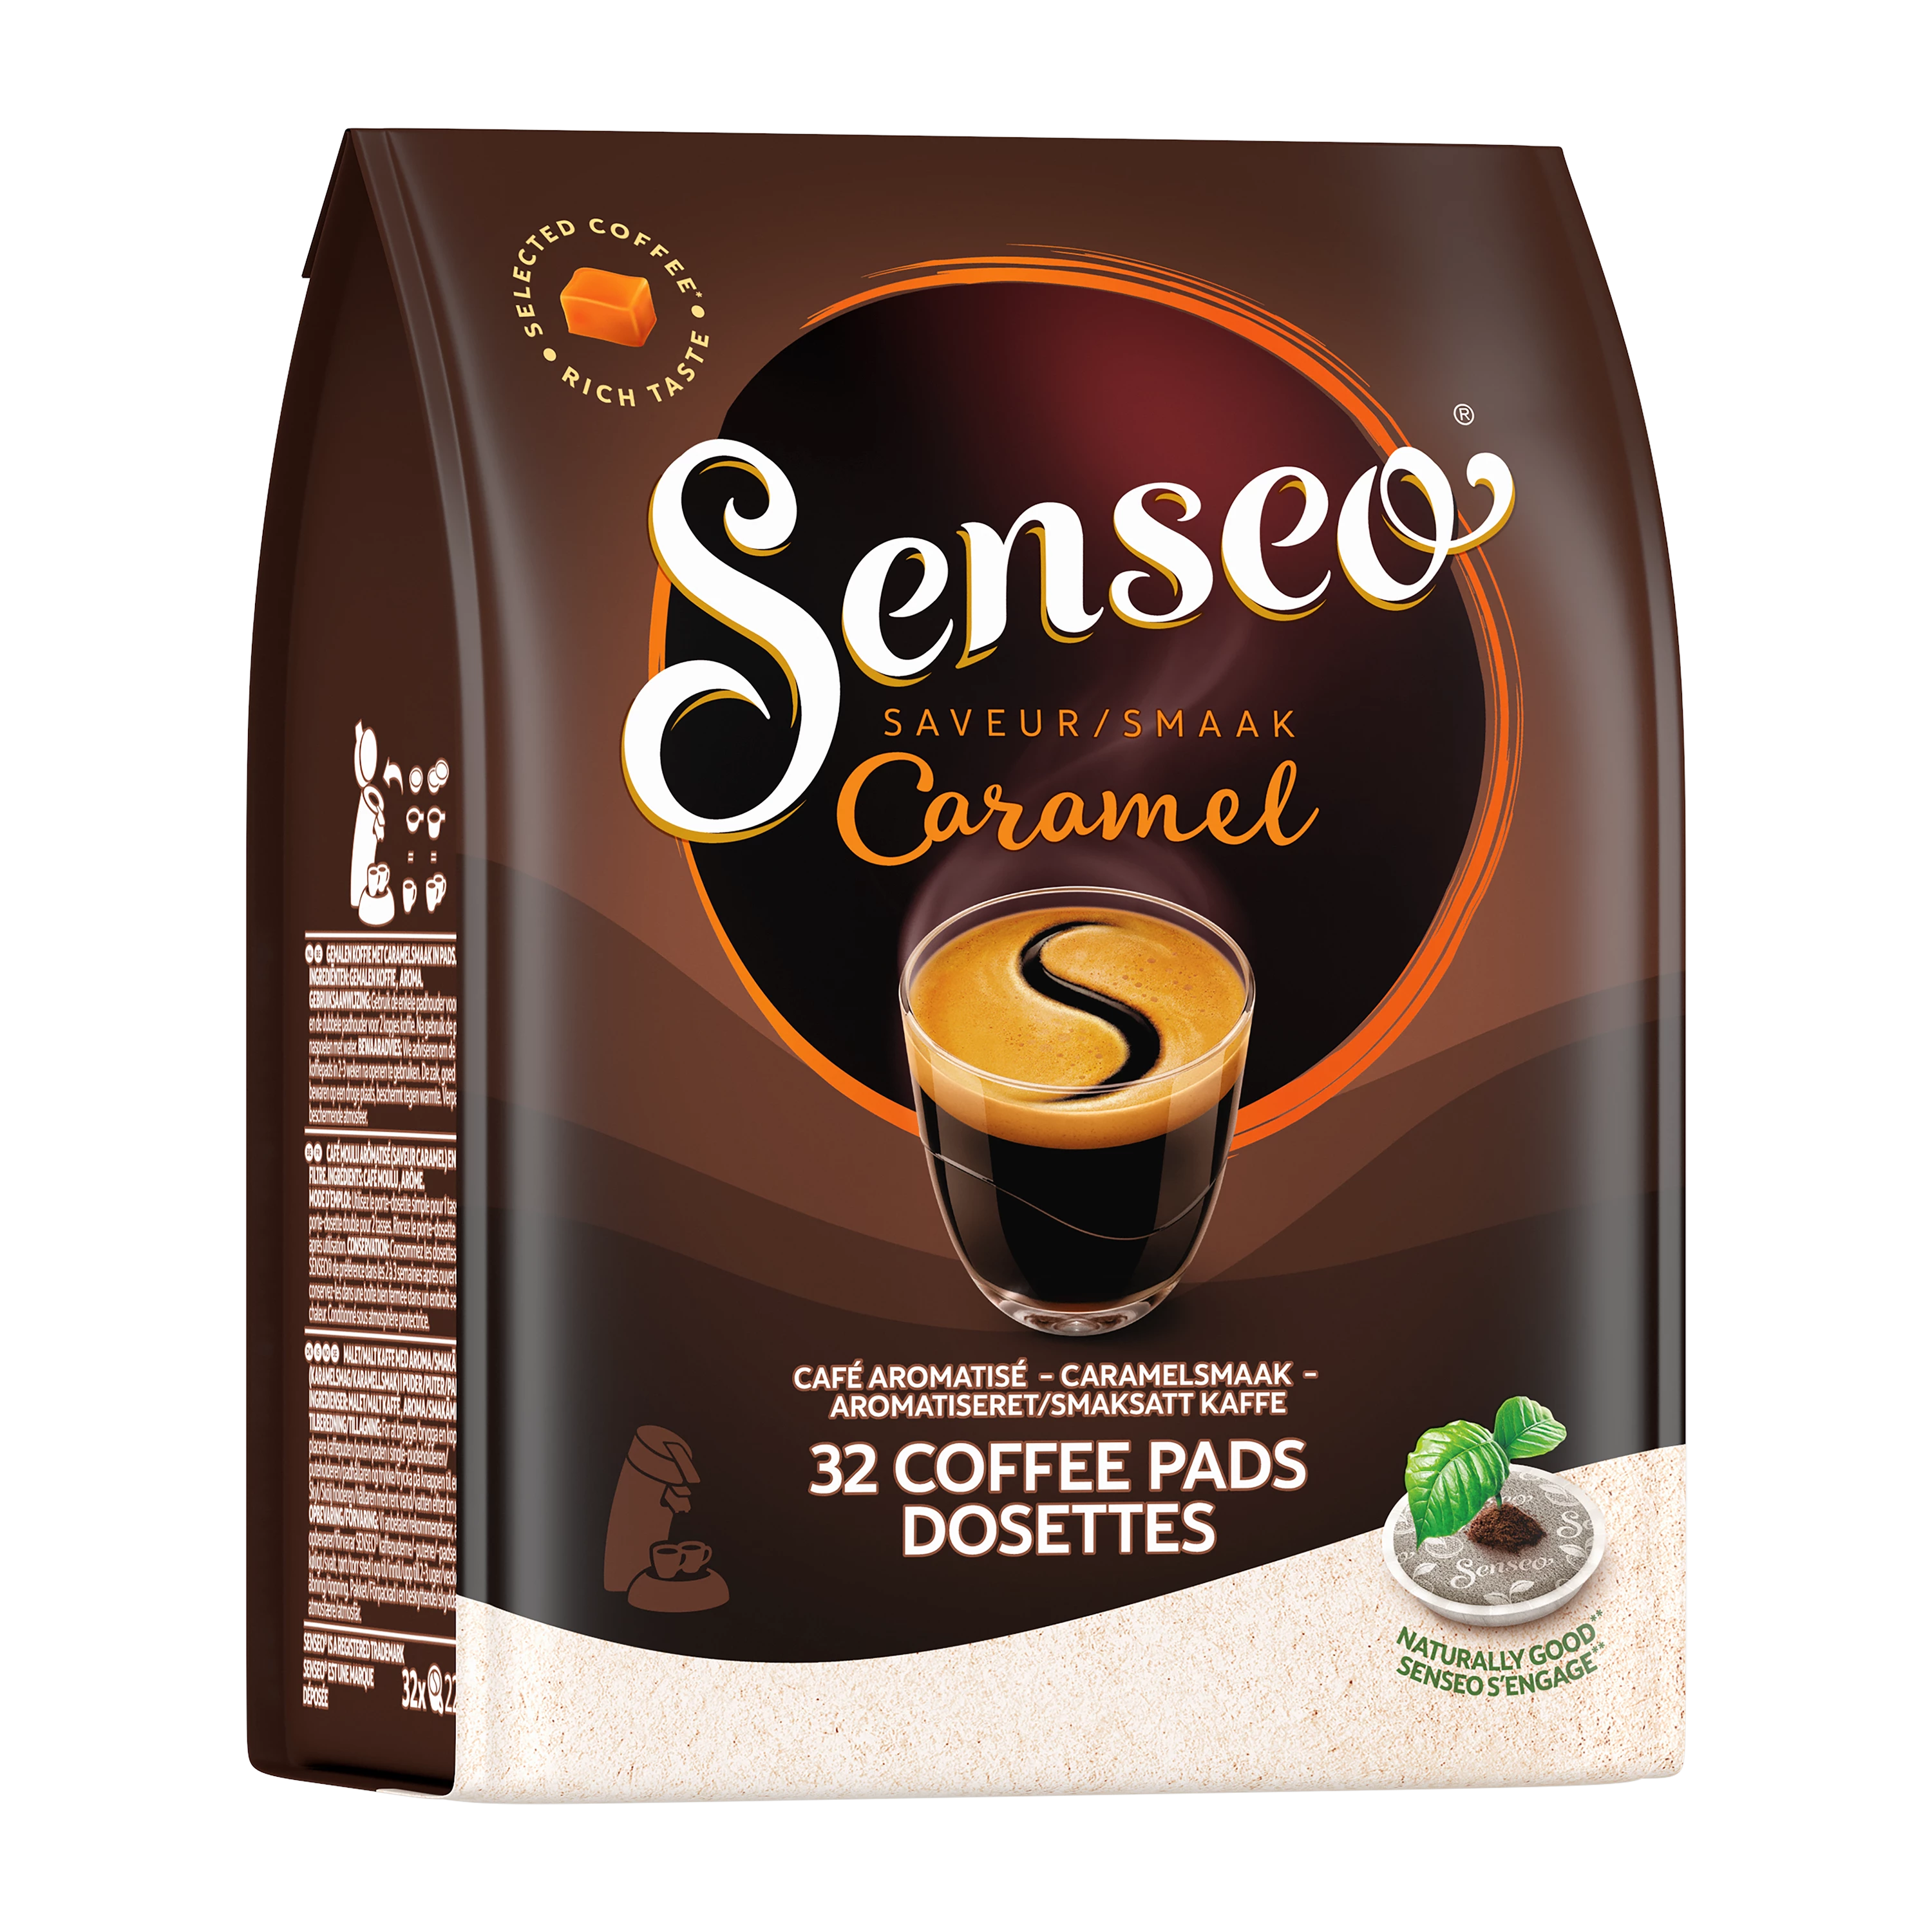 Dosette Senseo Milka : un chocolat chaud au goût unique du Milka